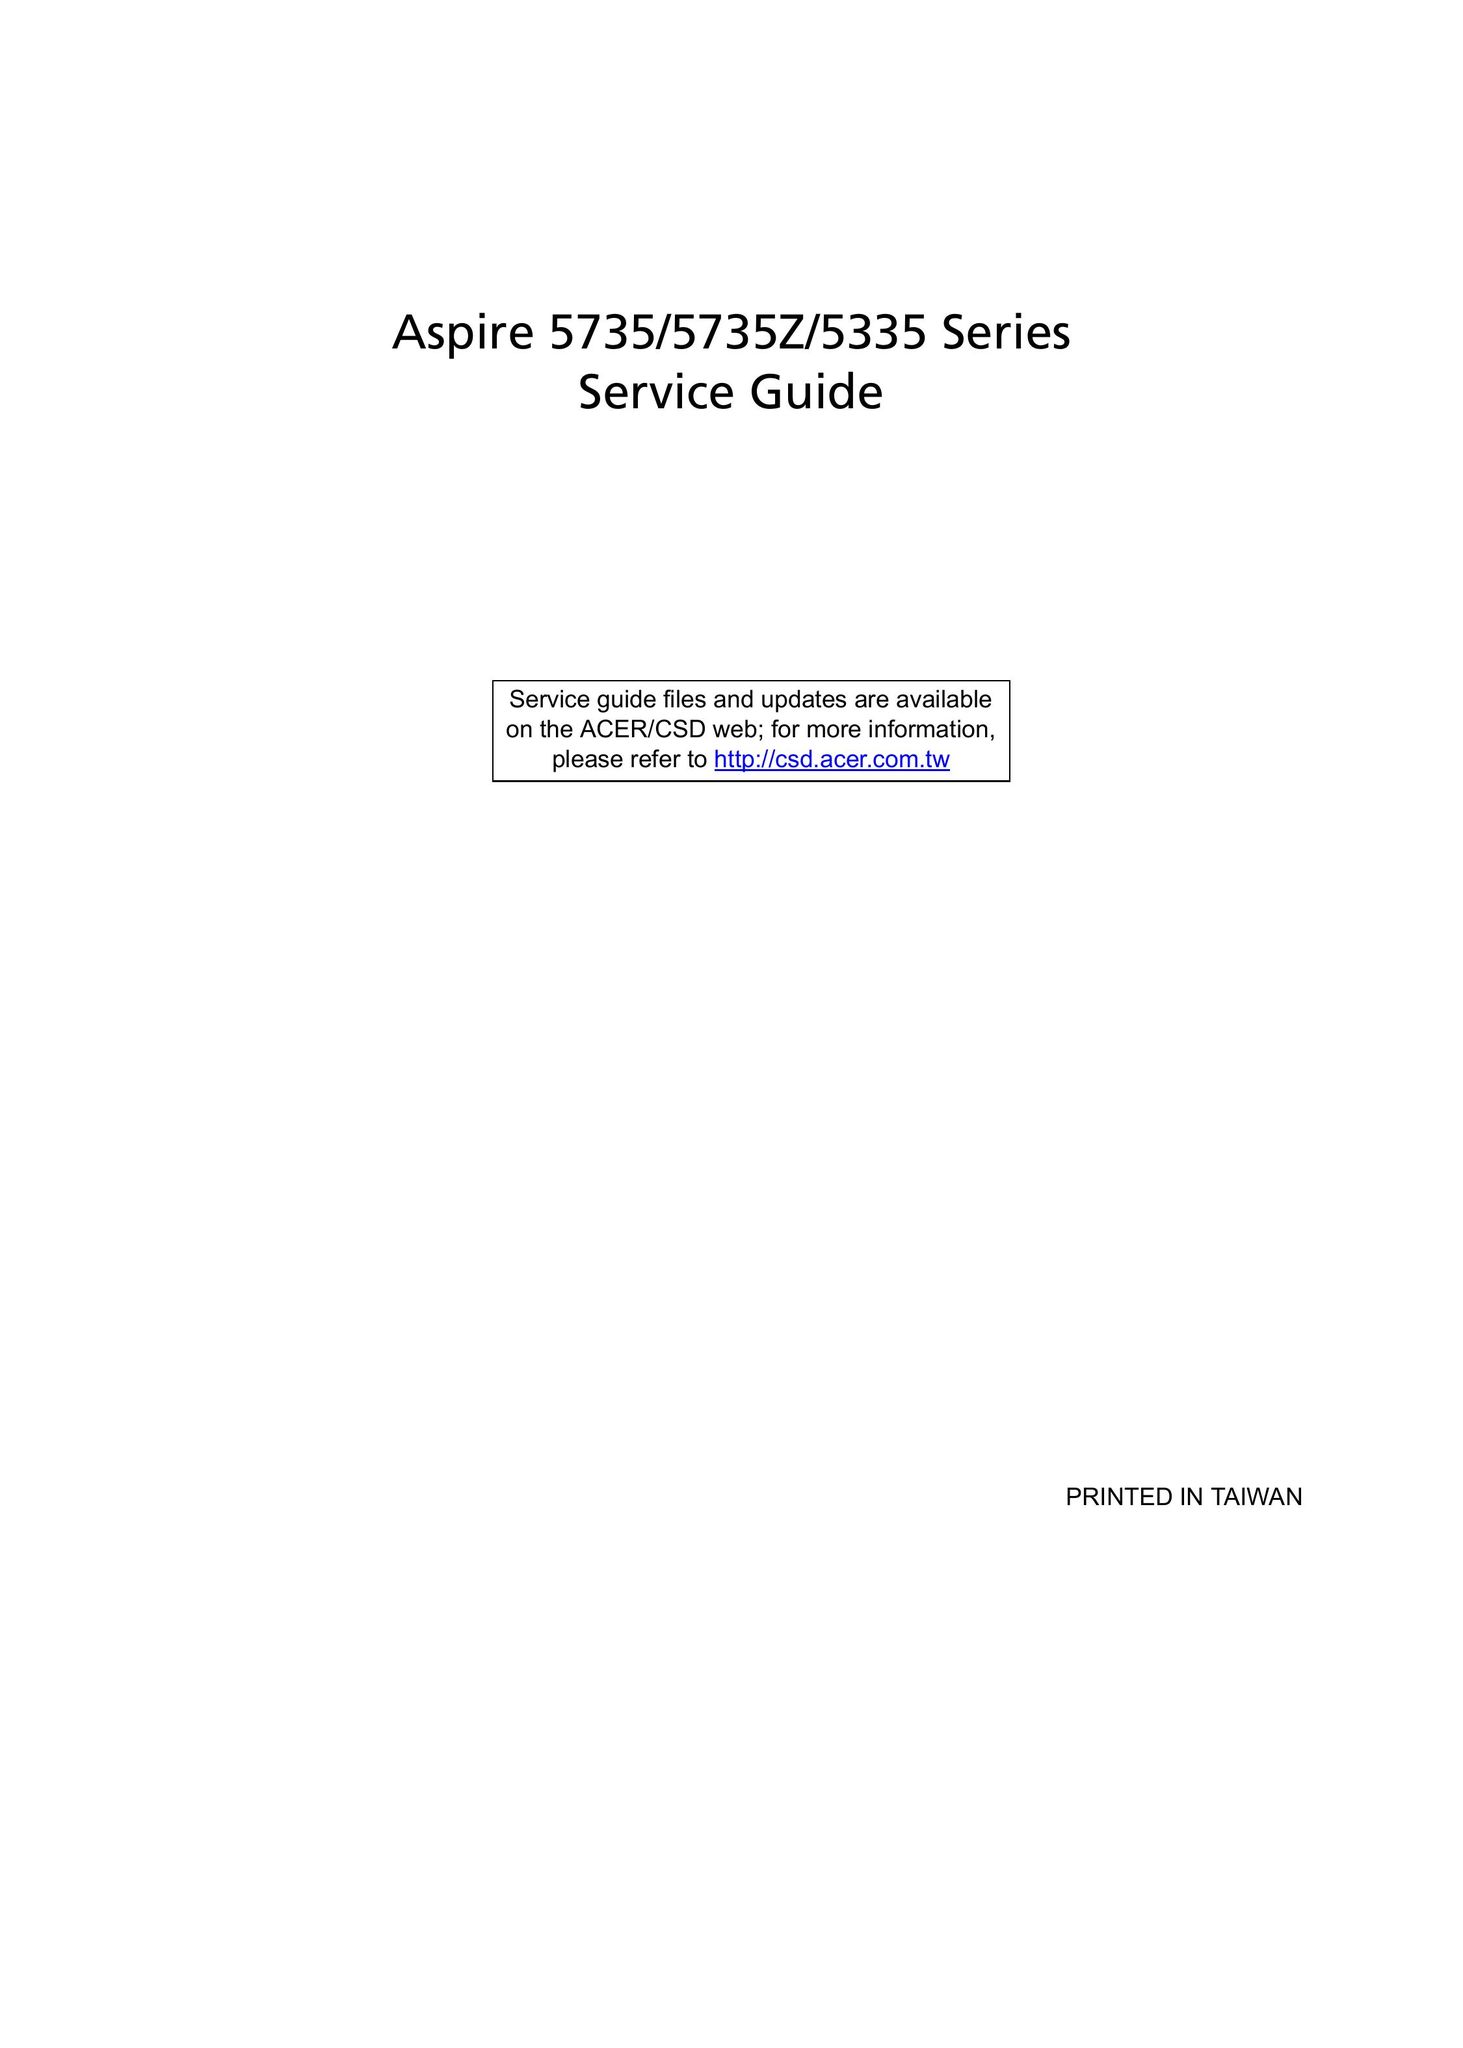 Aspire Digital 5735 Laptop User Manual